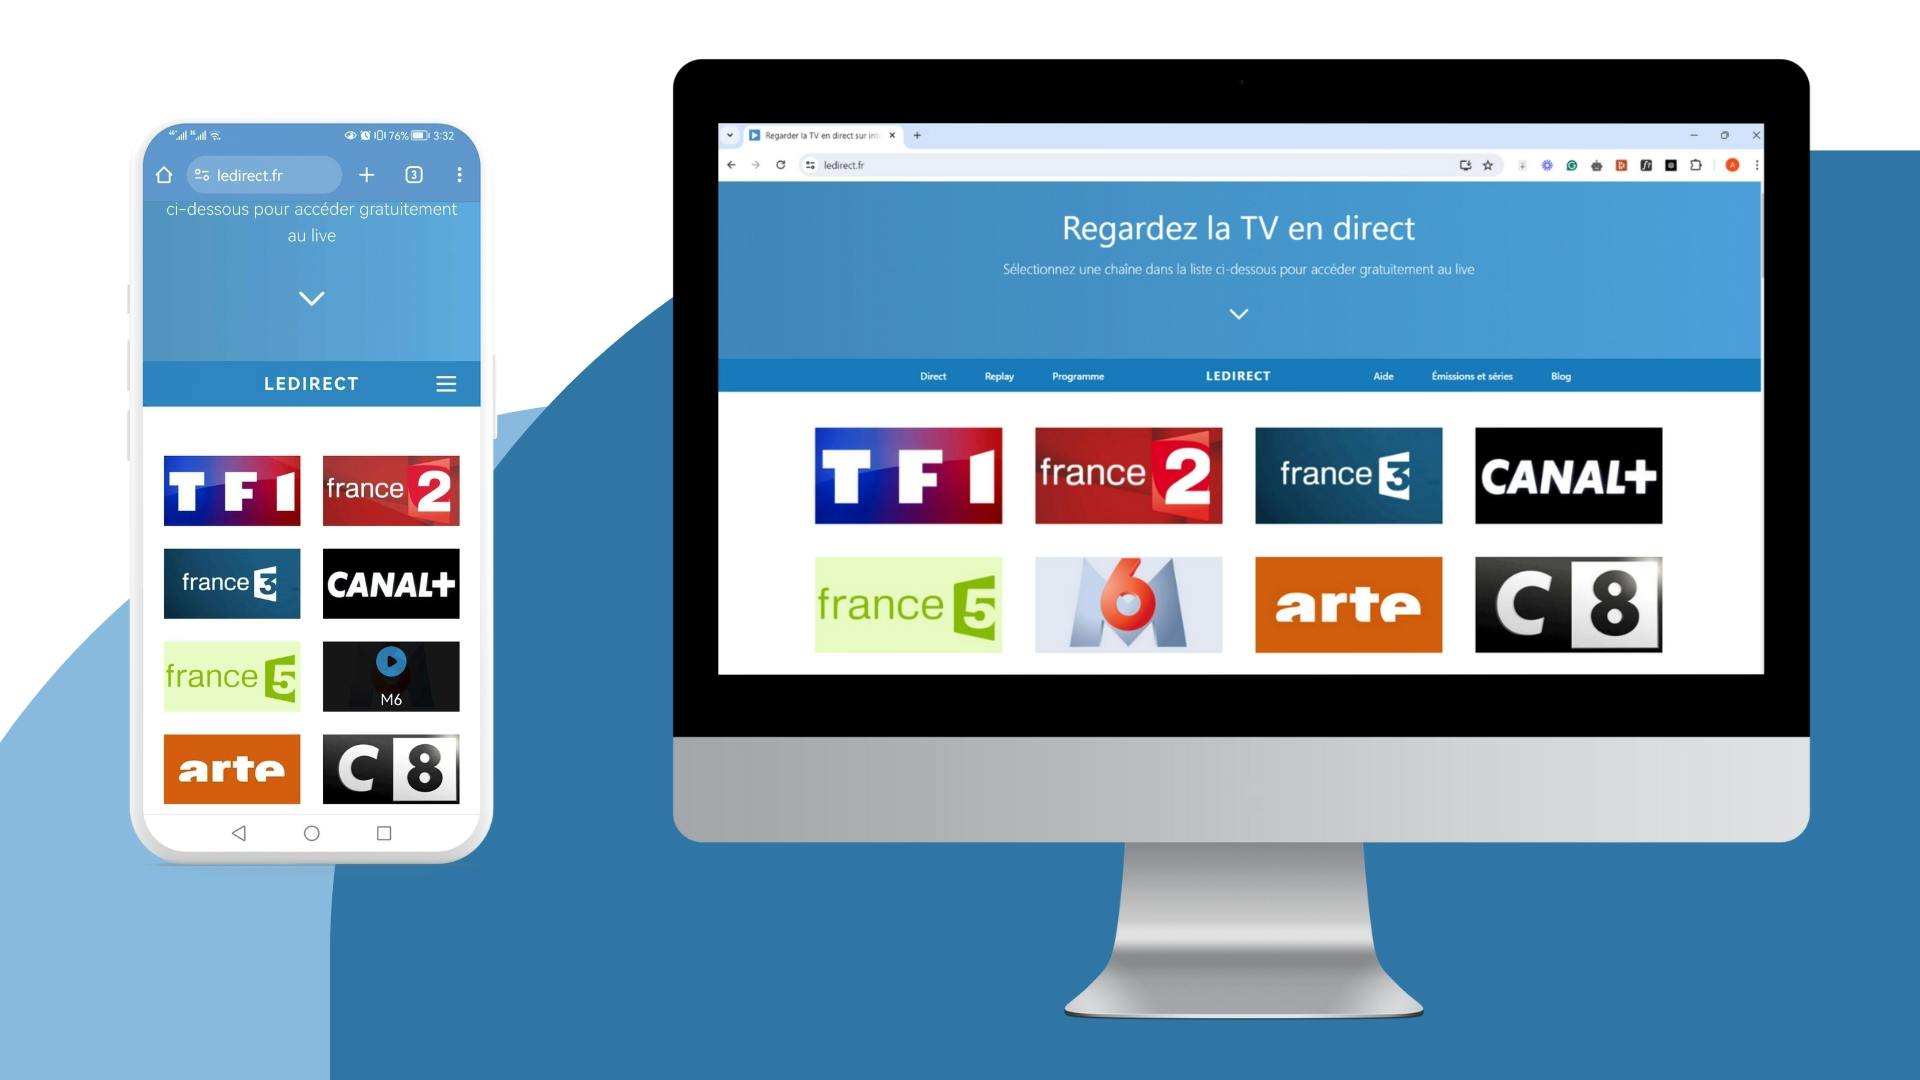 image avec un écran d’ordinateur et un écran mobile montrant la page d’accueil du site LeDirect.fr